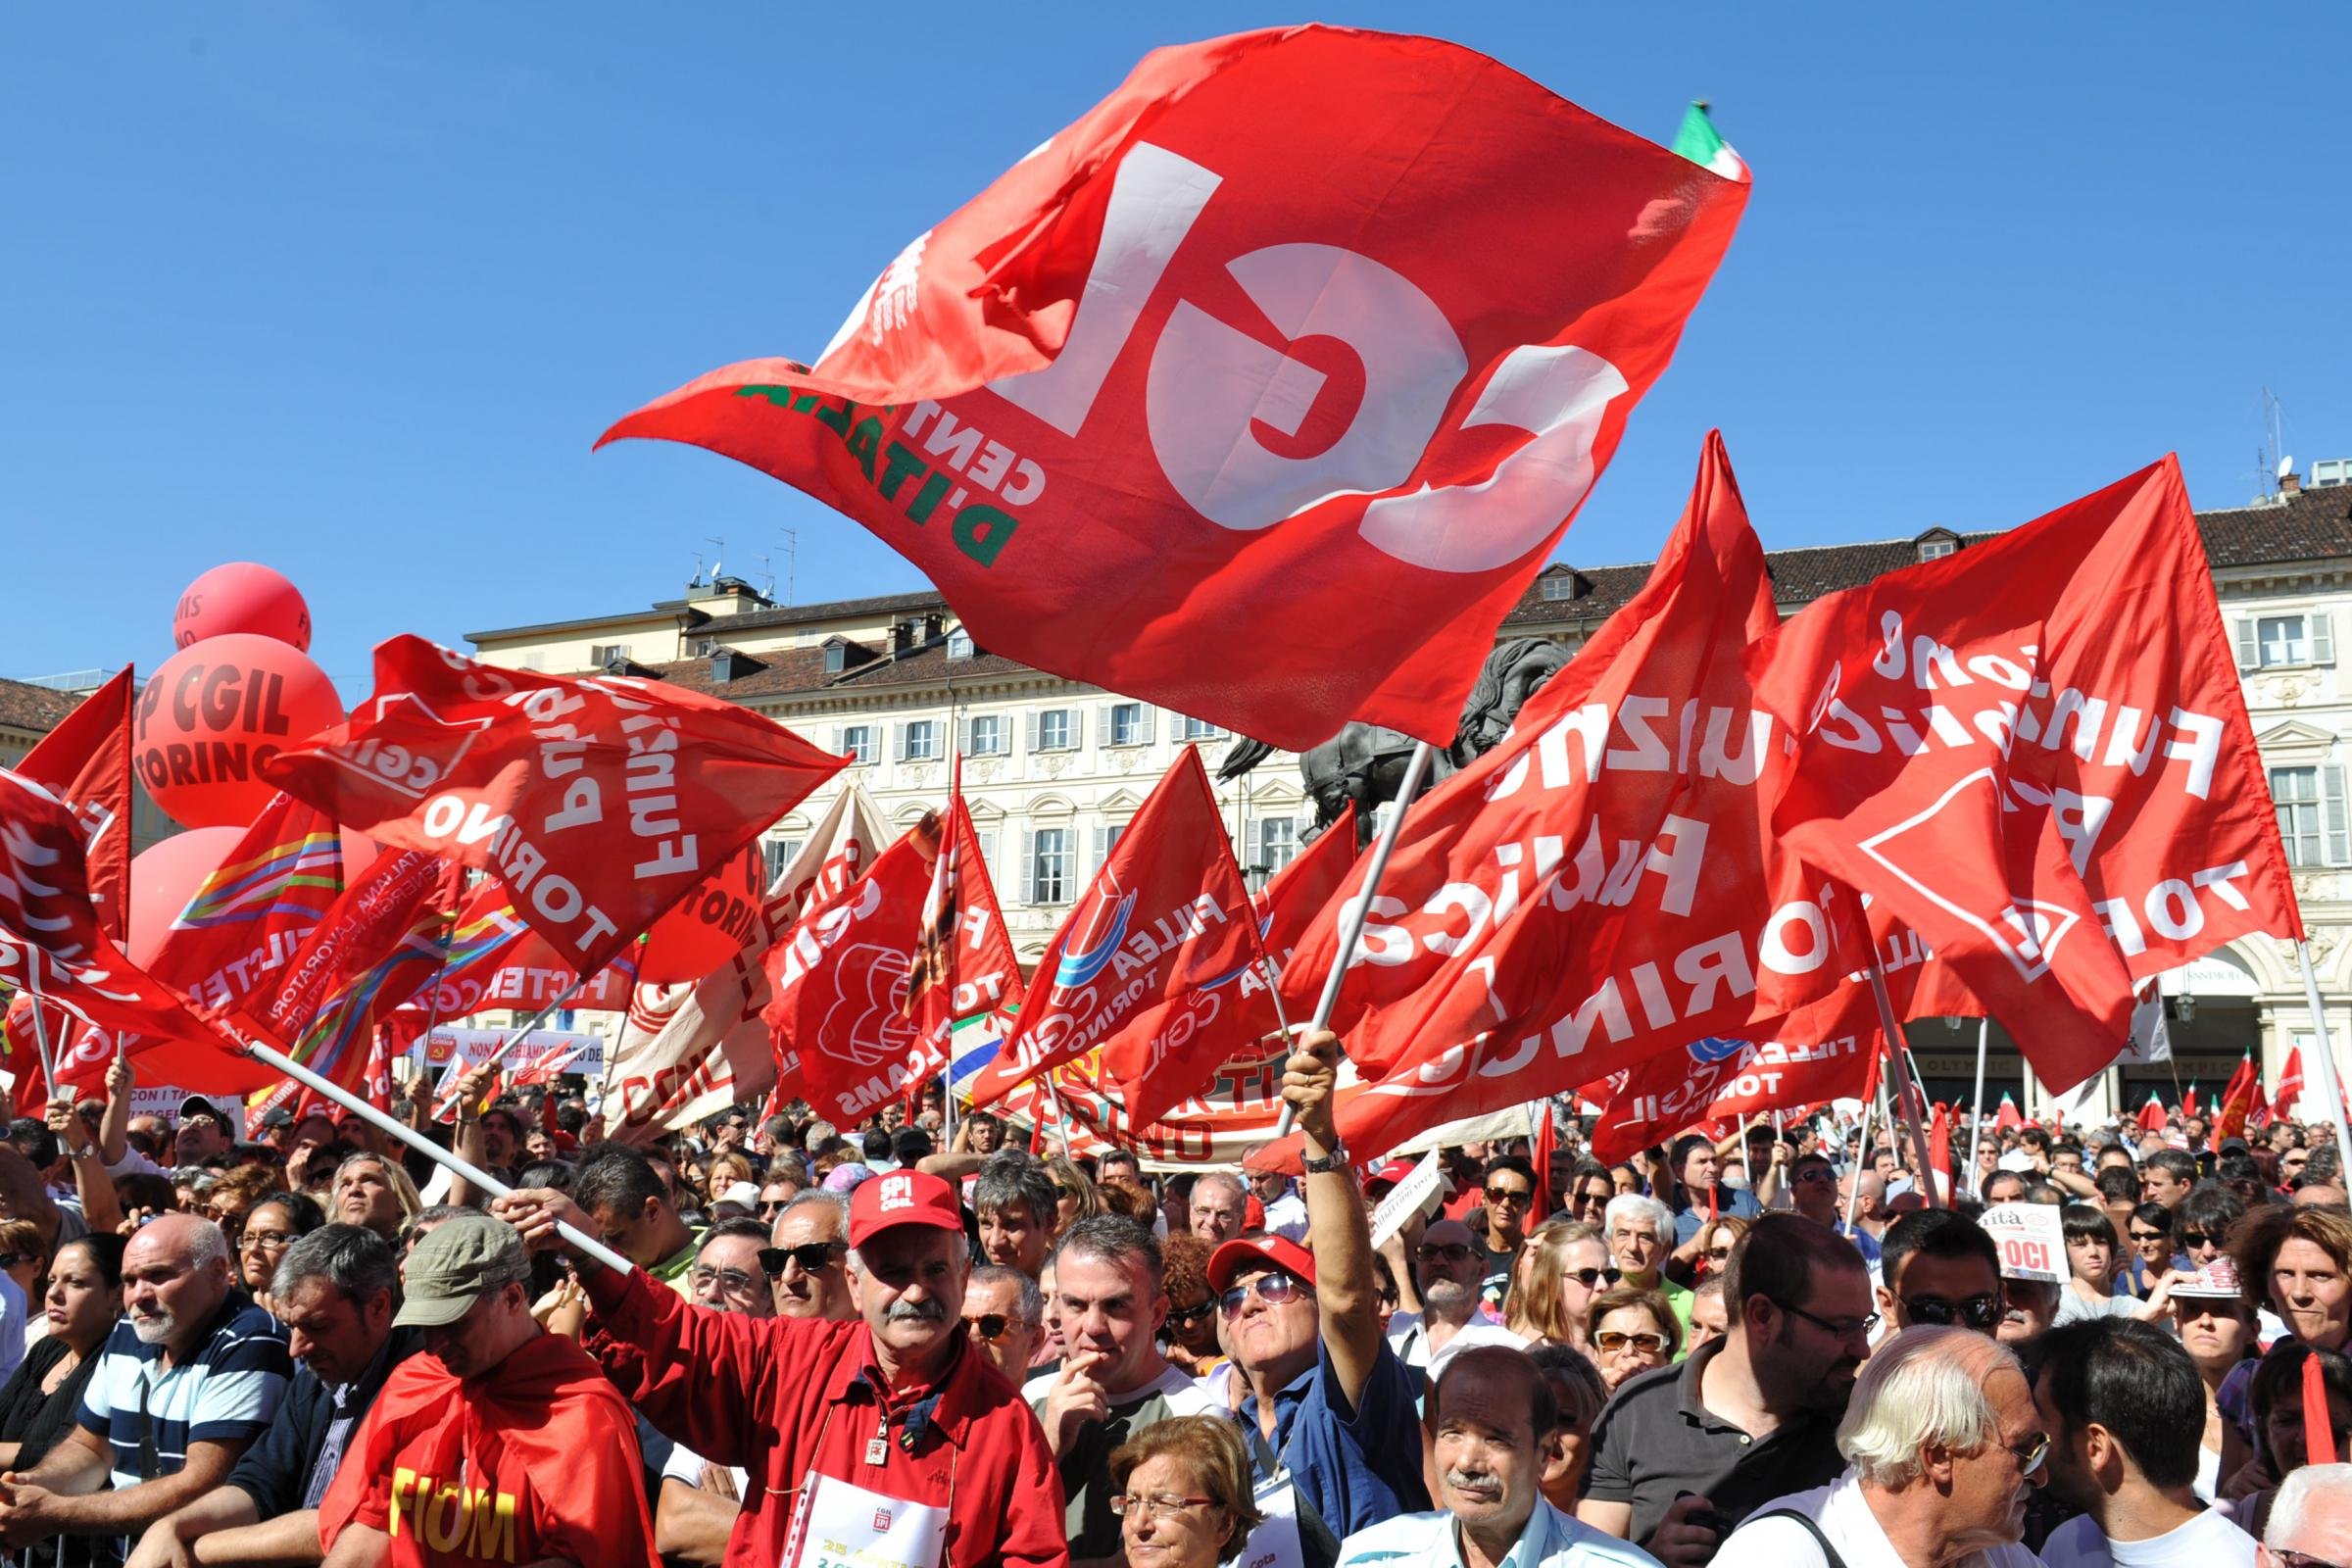 La Cgil torna in piazza contro i voucher. Sabato manifestazione a Roma